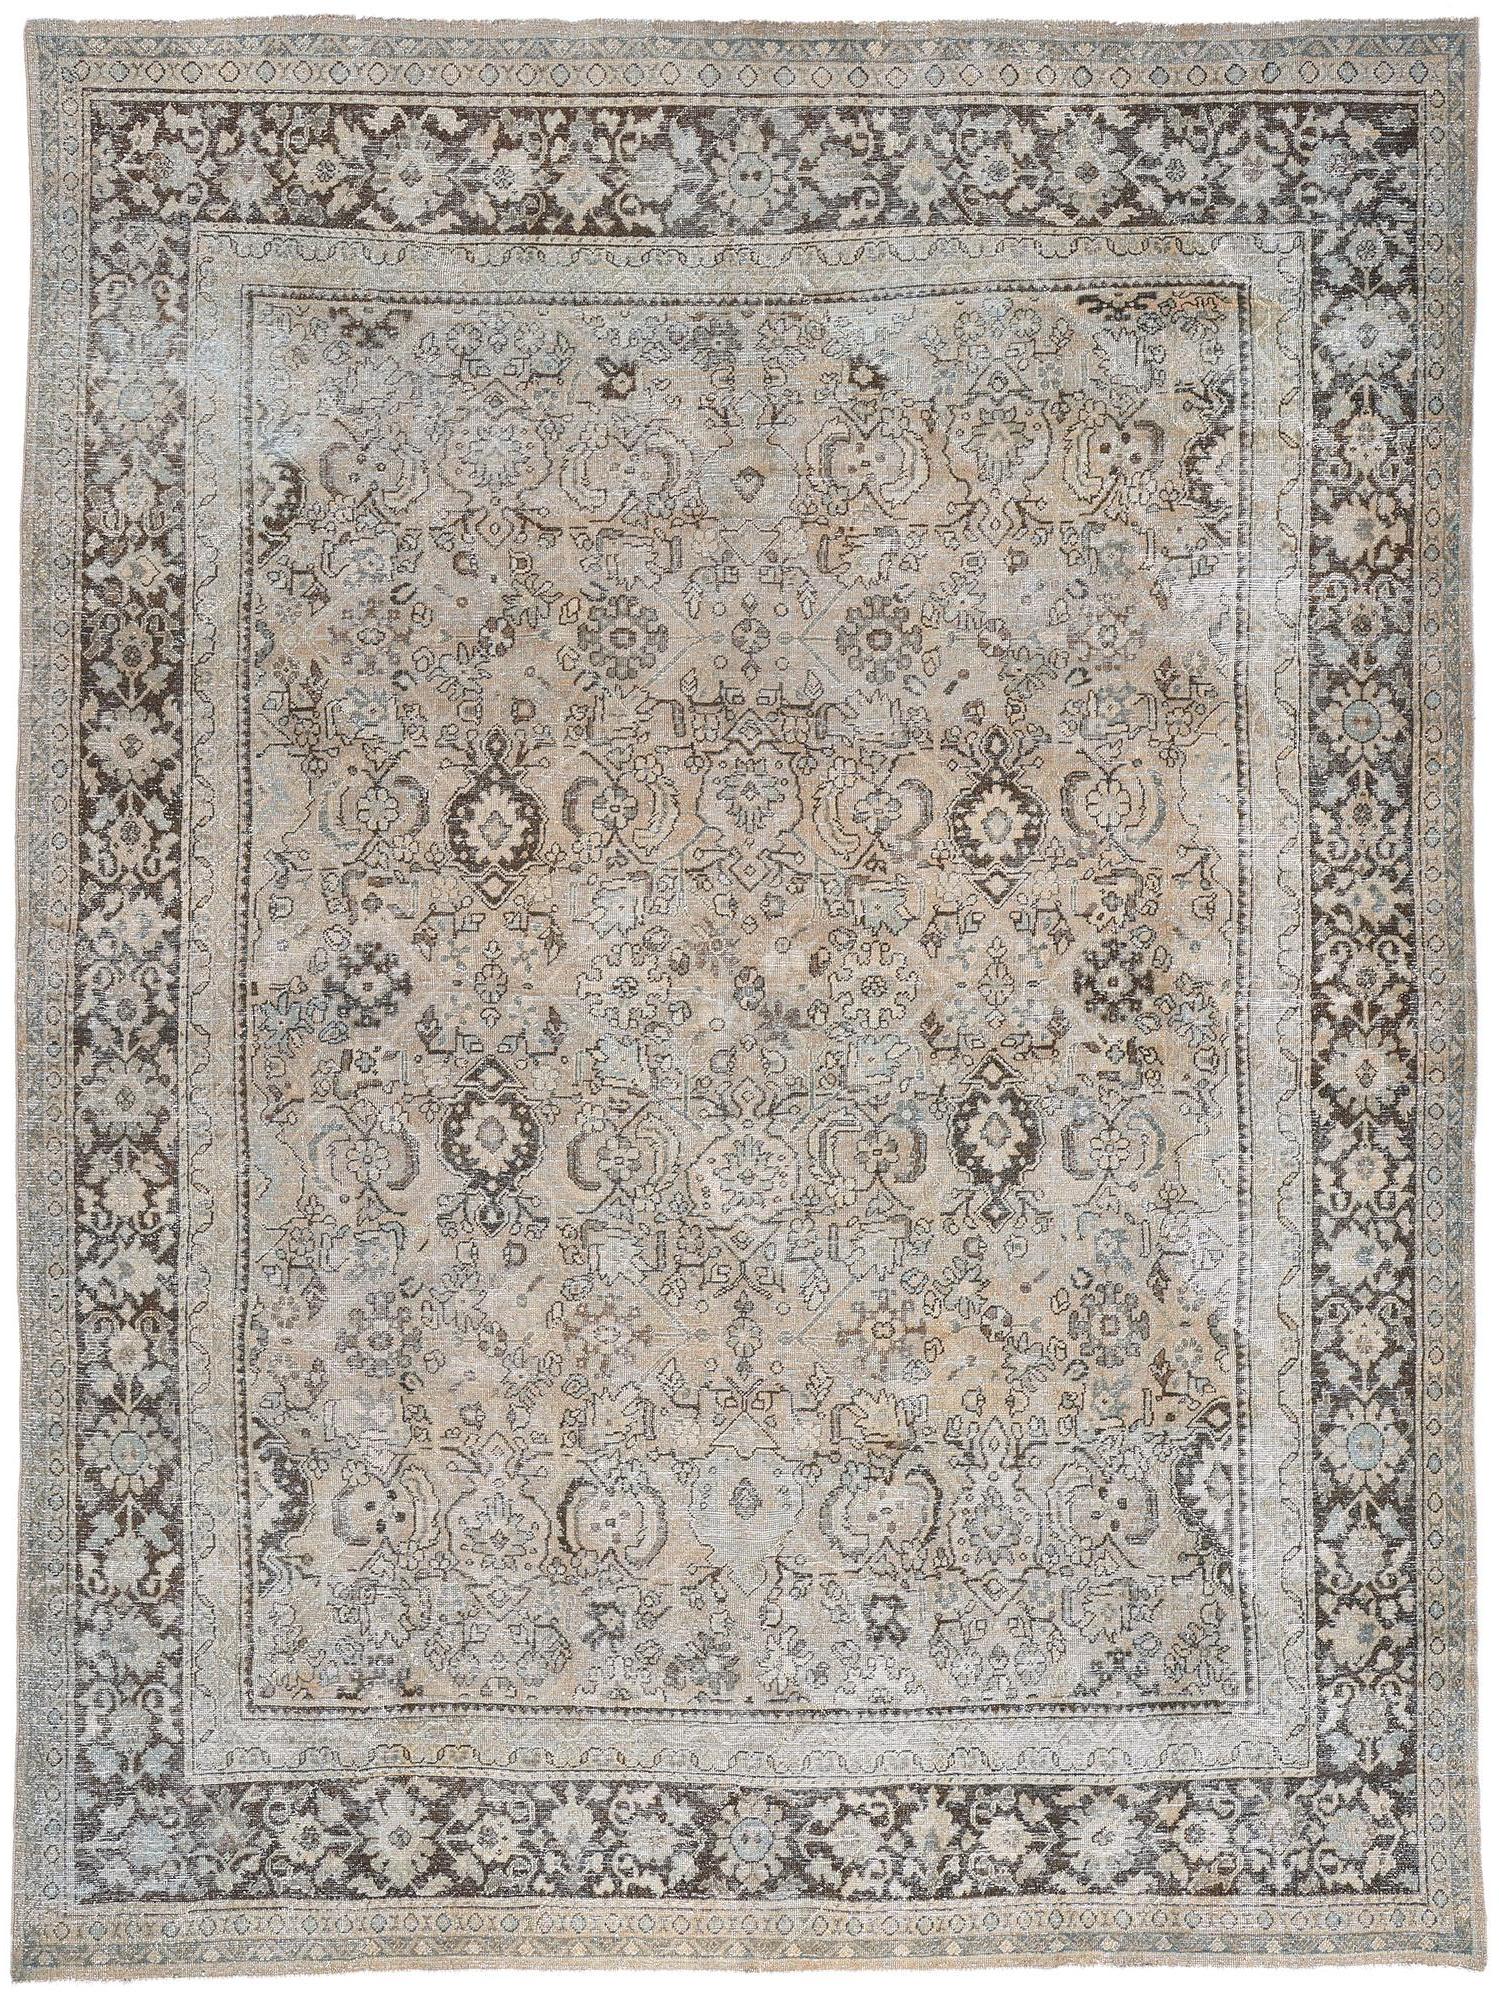 Antiker persischer Mahal-Teppich, Rustikal und raffiniert trifft auf entspannten Luxus